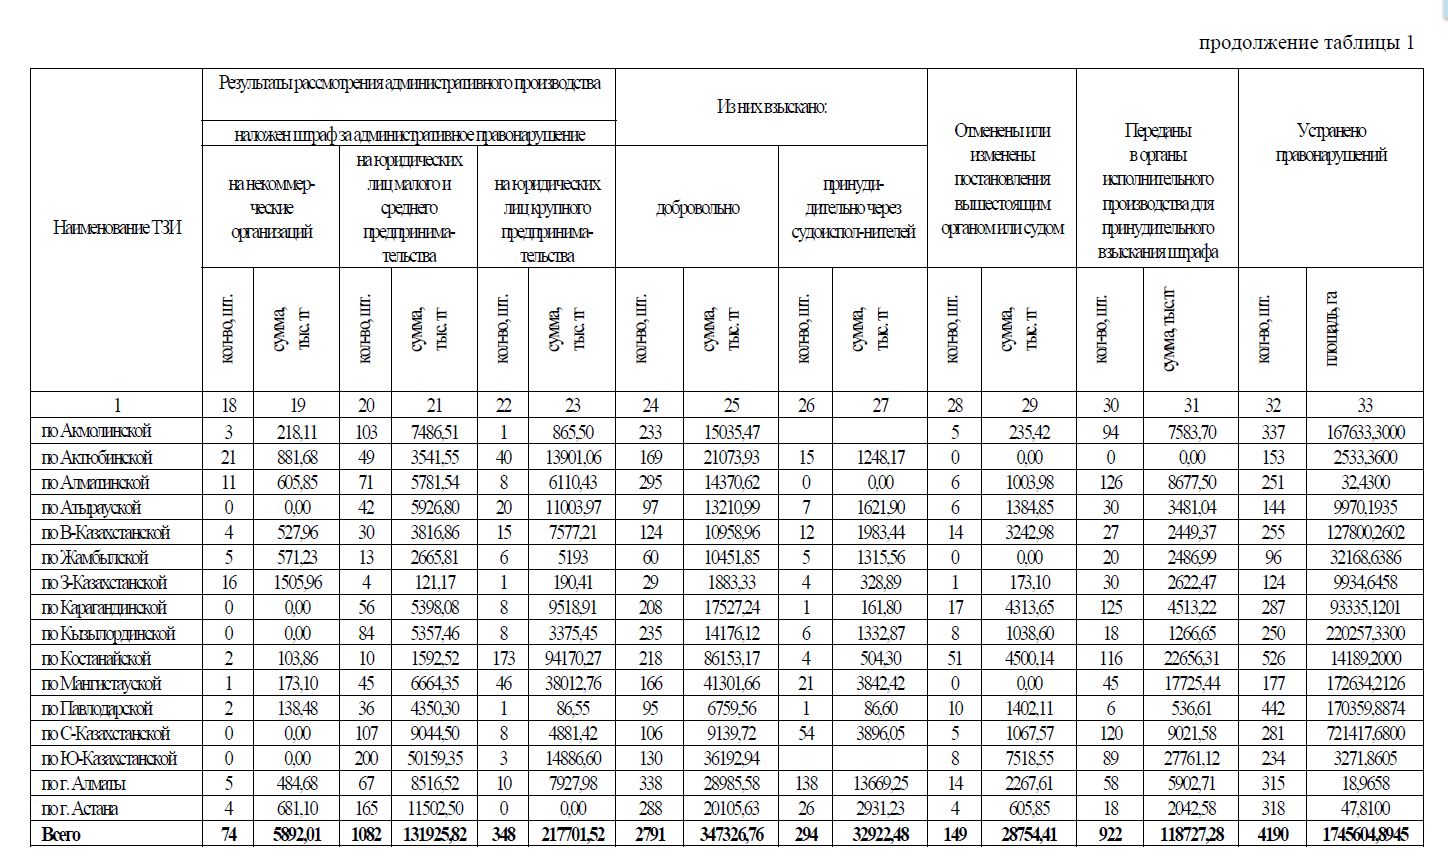 Результаты государственного контроля за использованием и охраной земель, проведенного территориальными земельными инспекциями за 2013 год